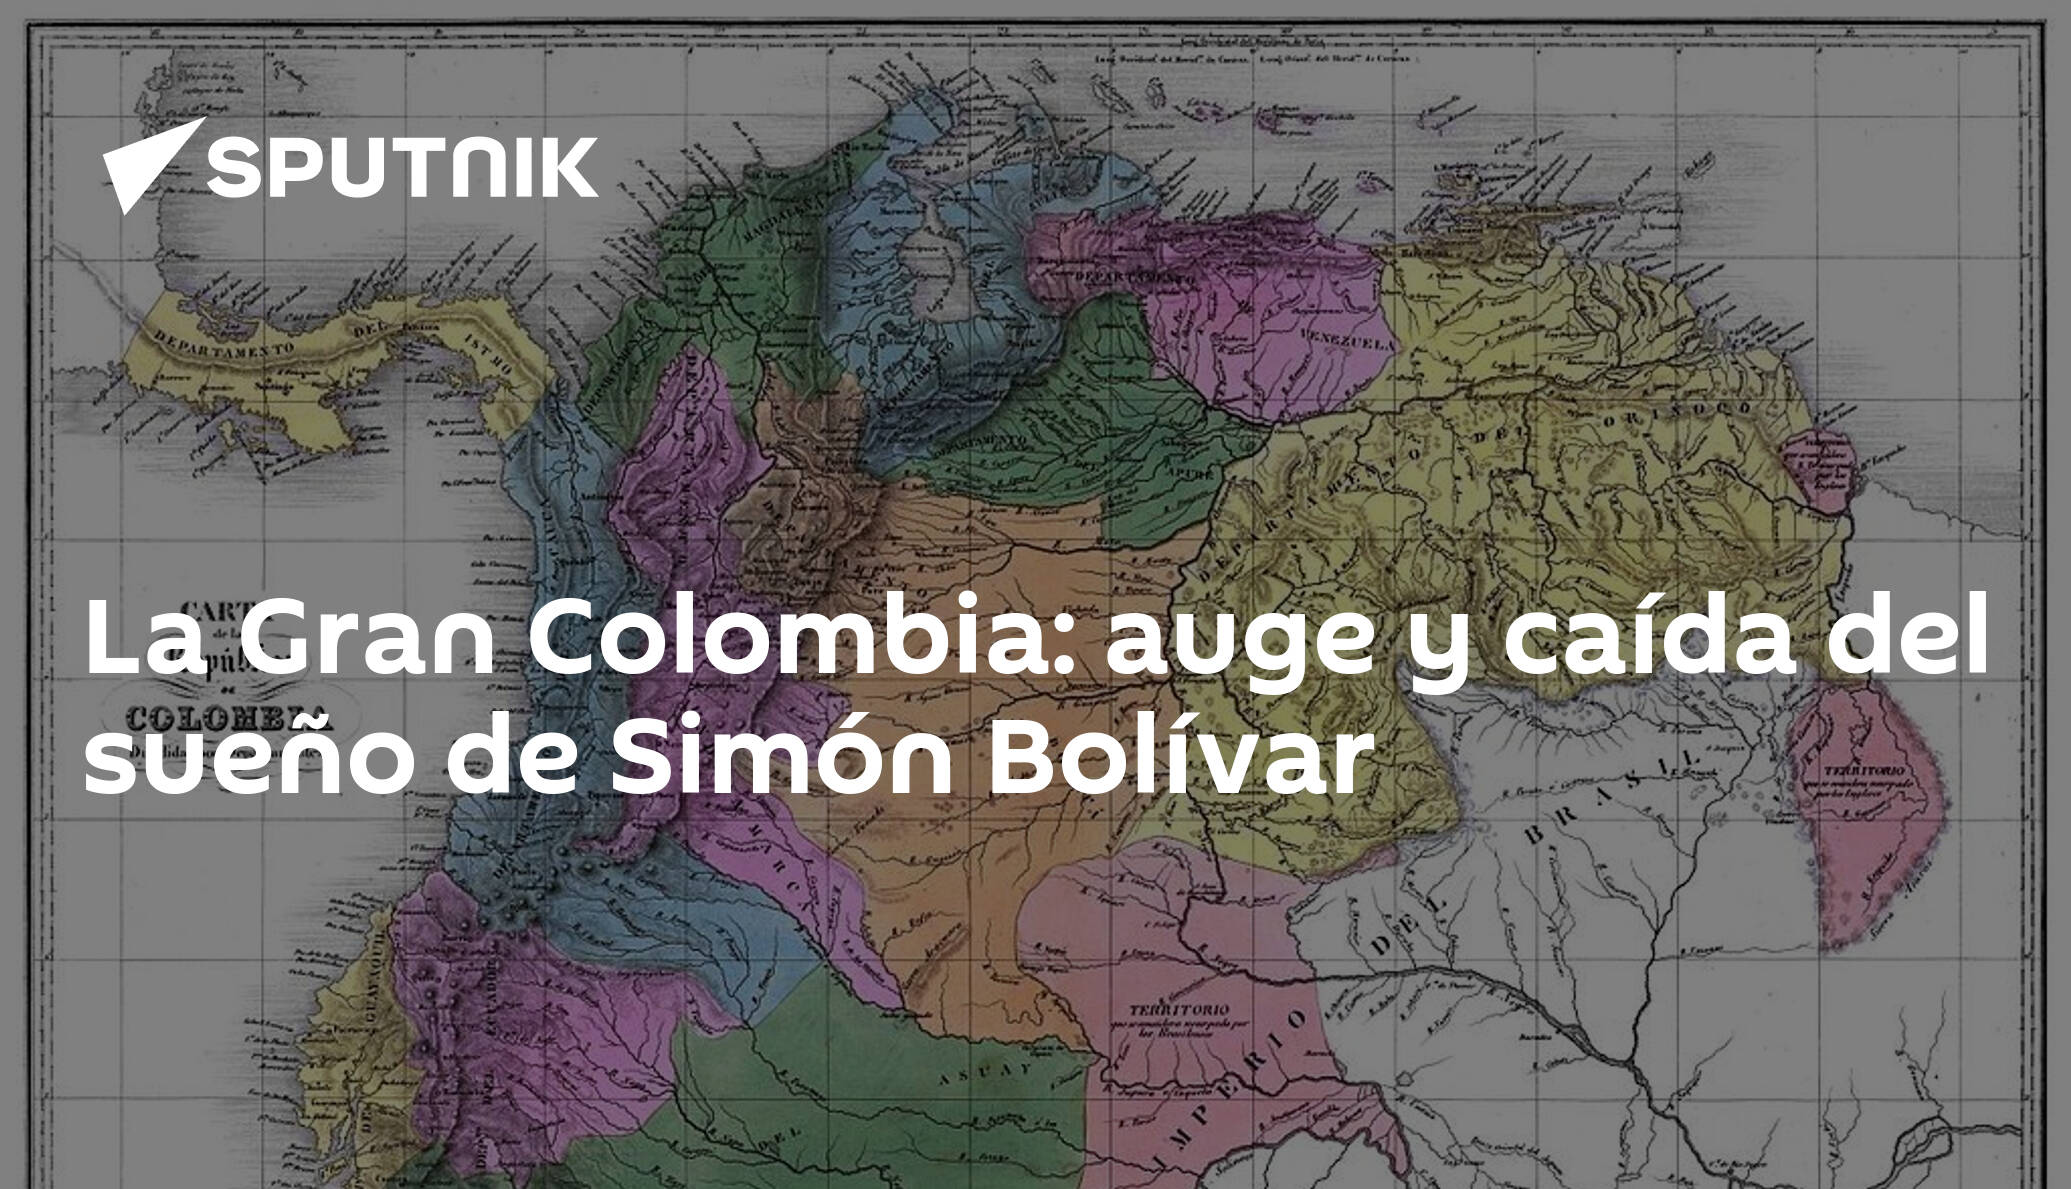 La Gran Colombia Auge Y Caída Del Sueño De Simón Bolívar 07082019 Sputnik Mundo 8108